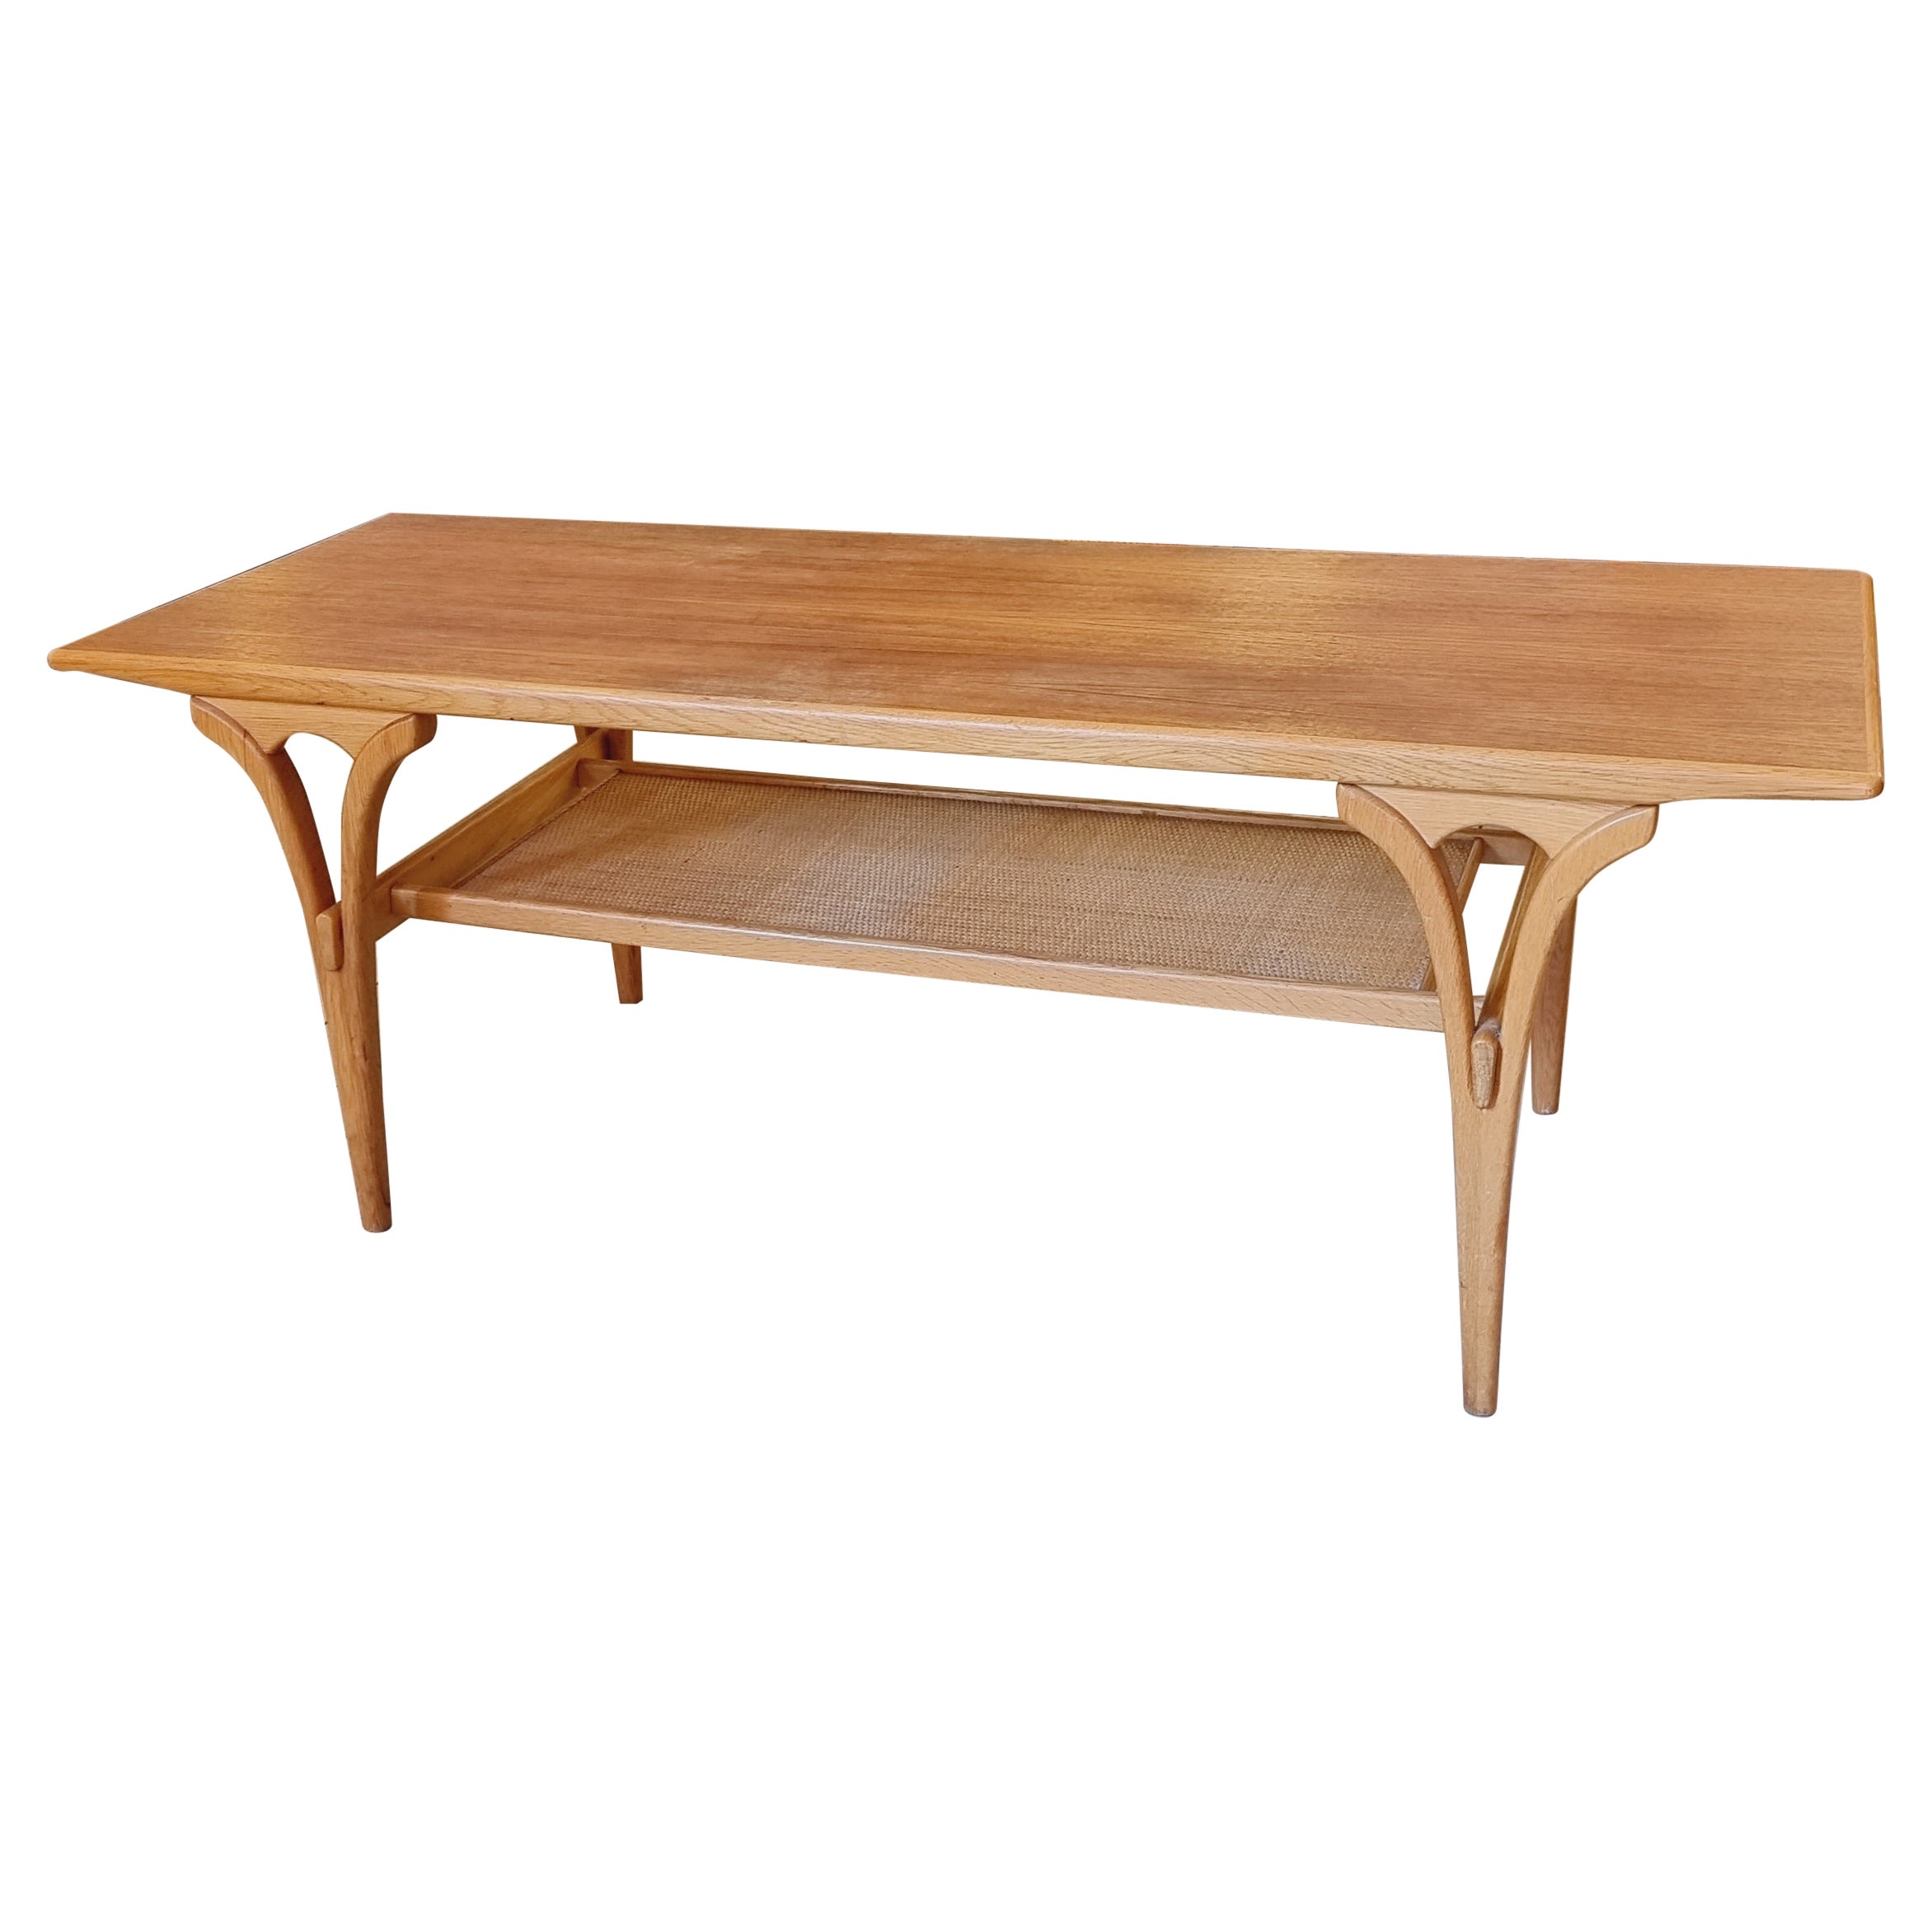 Birger Larsson, Table basse / table de canapé, teck, chêne et rotin. Scandinave moderne